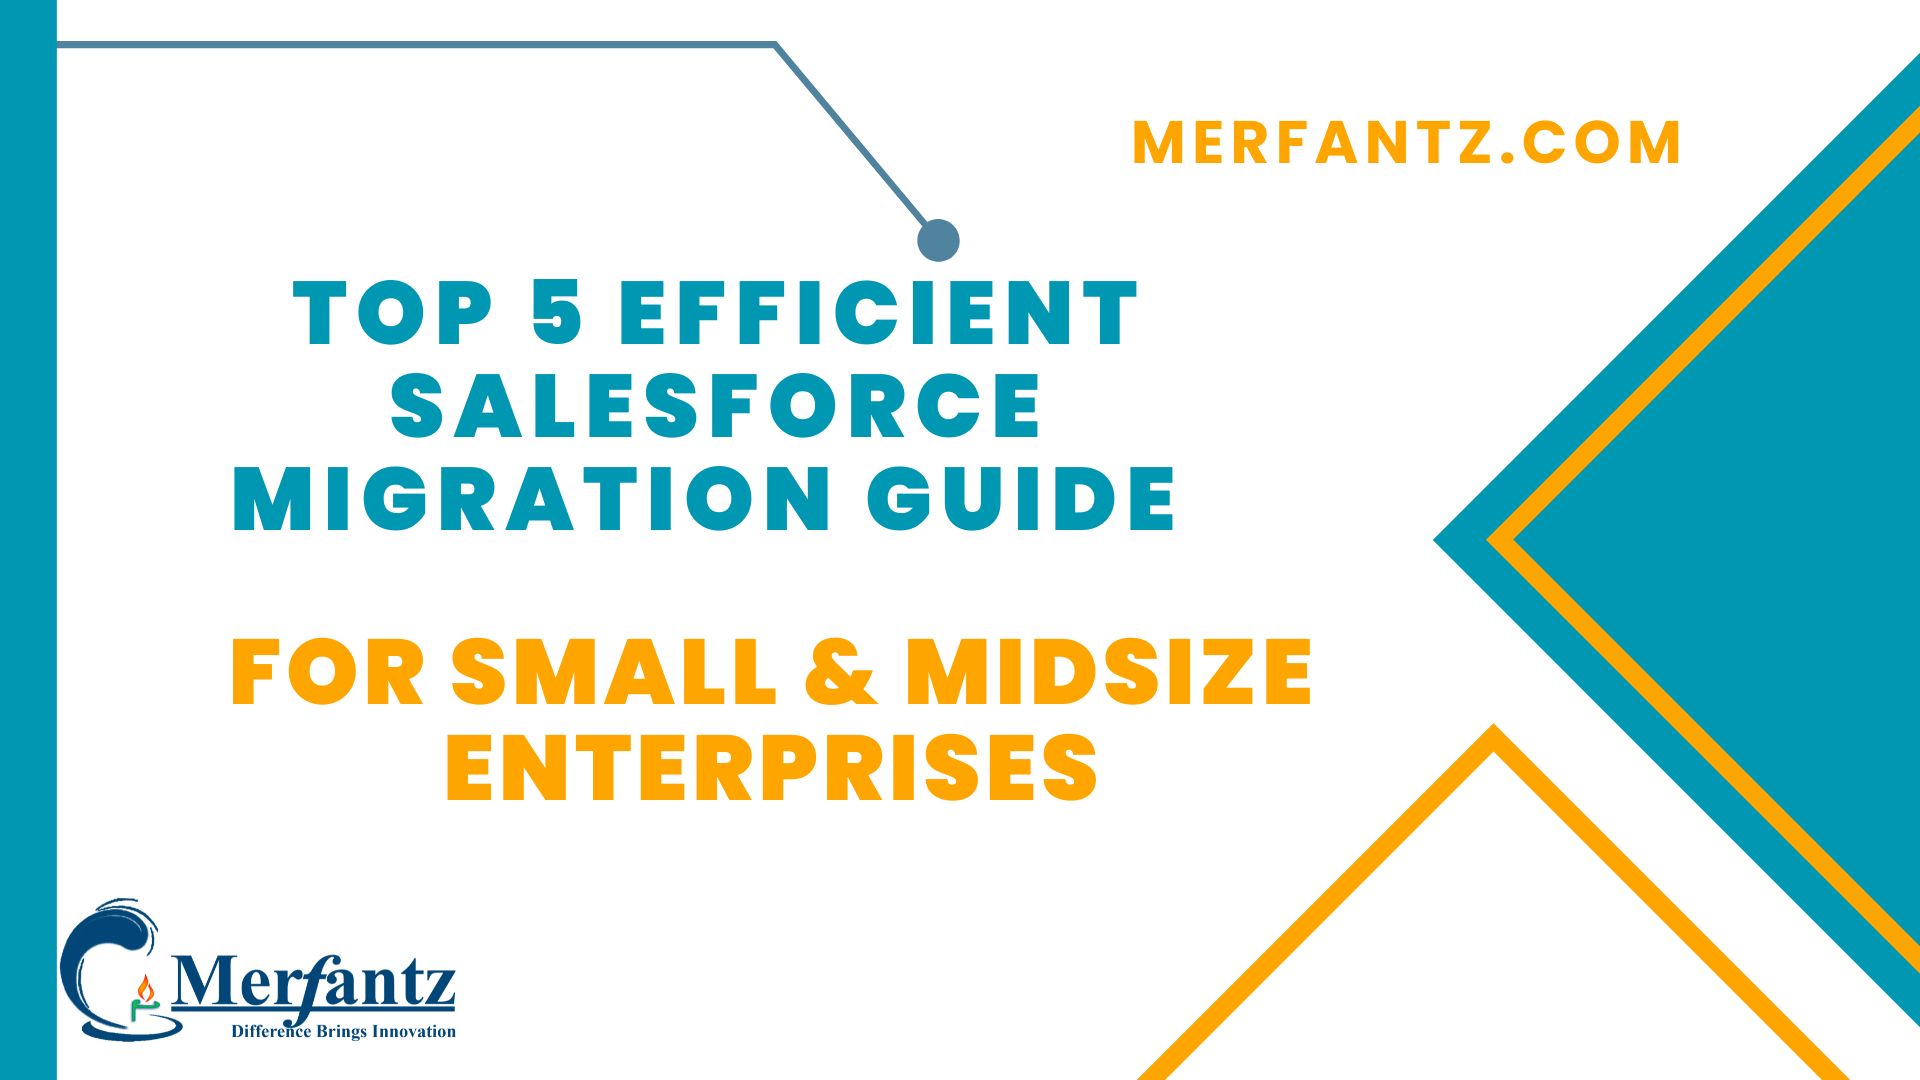 Top 5 Efficient Salesforce Migration Guide for Small & Midsize Enterprises